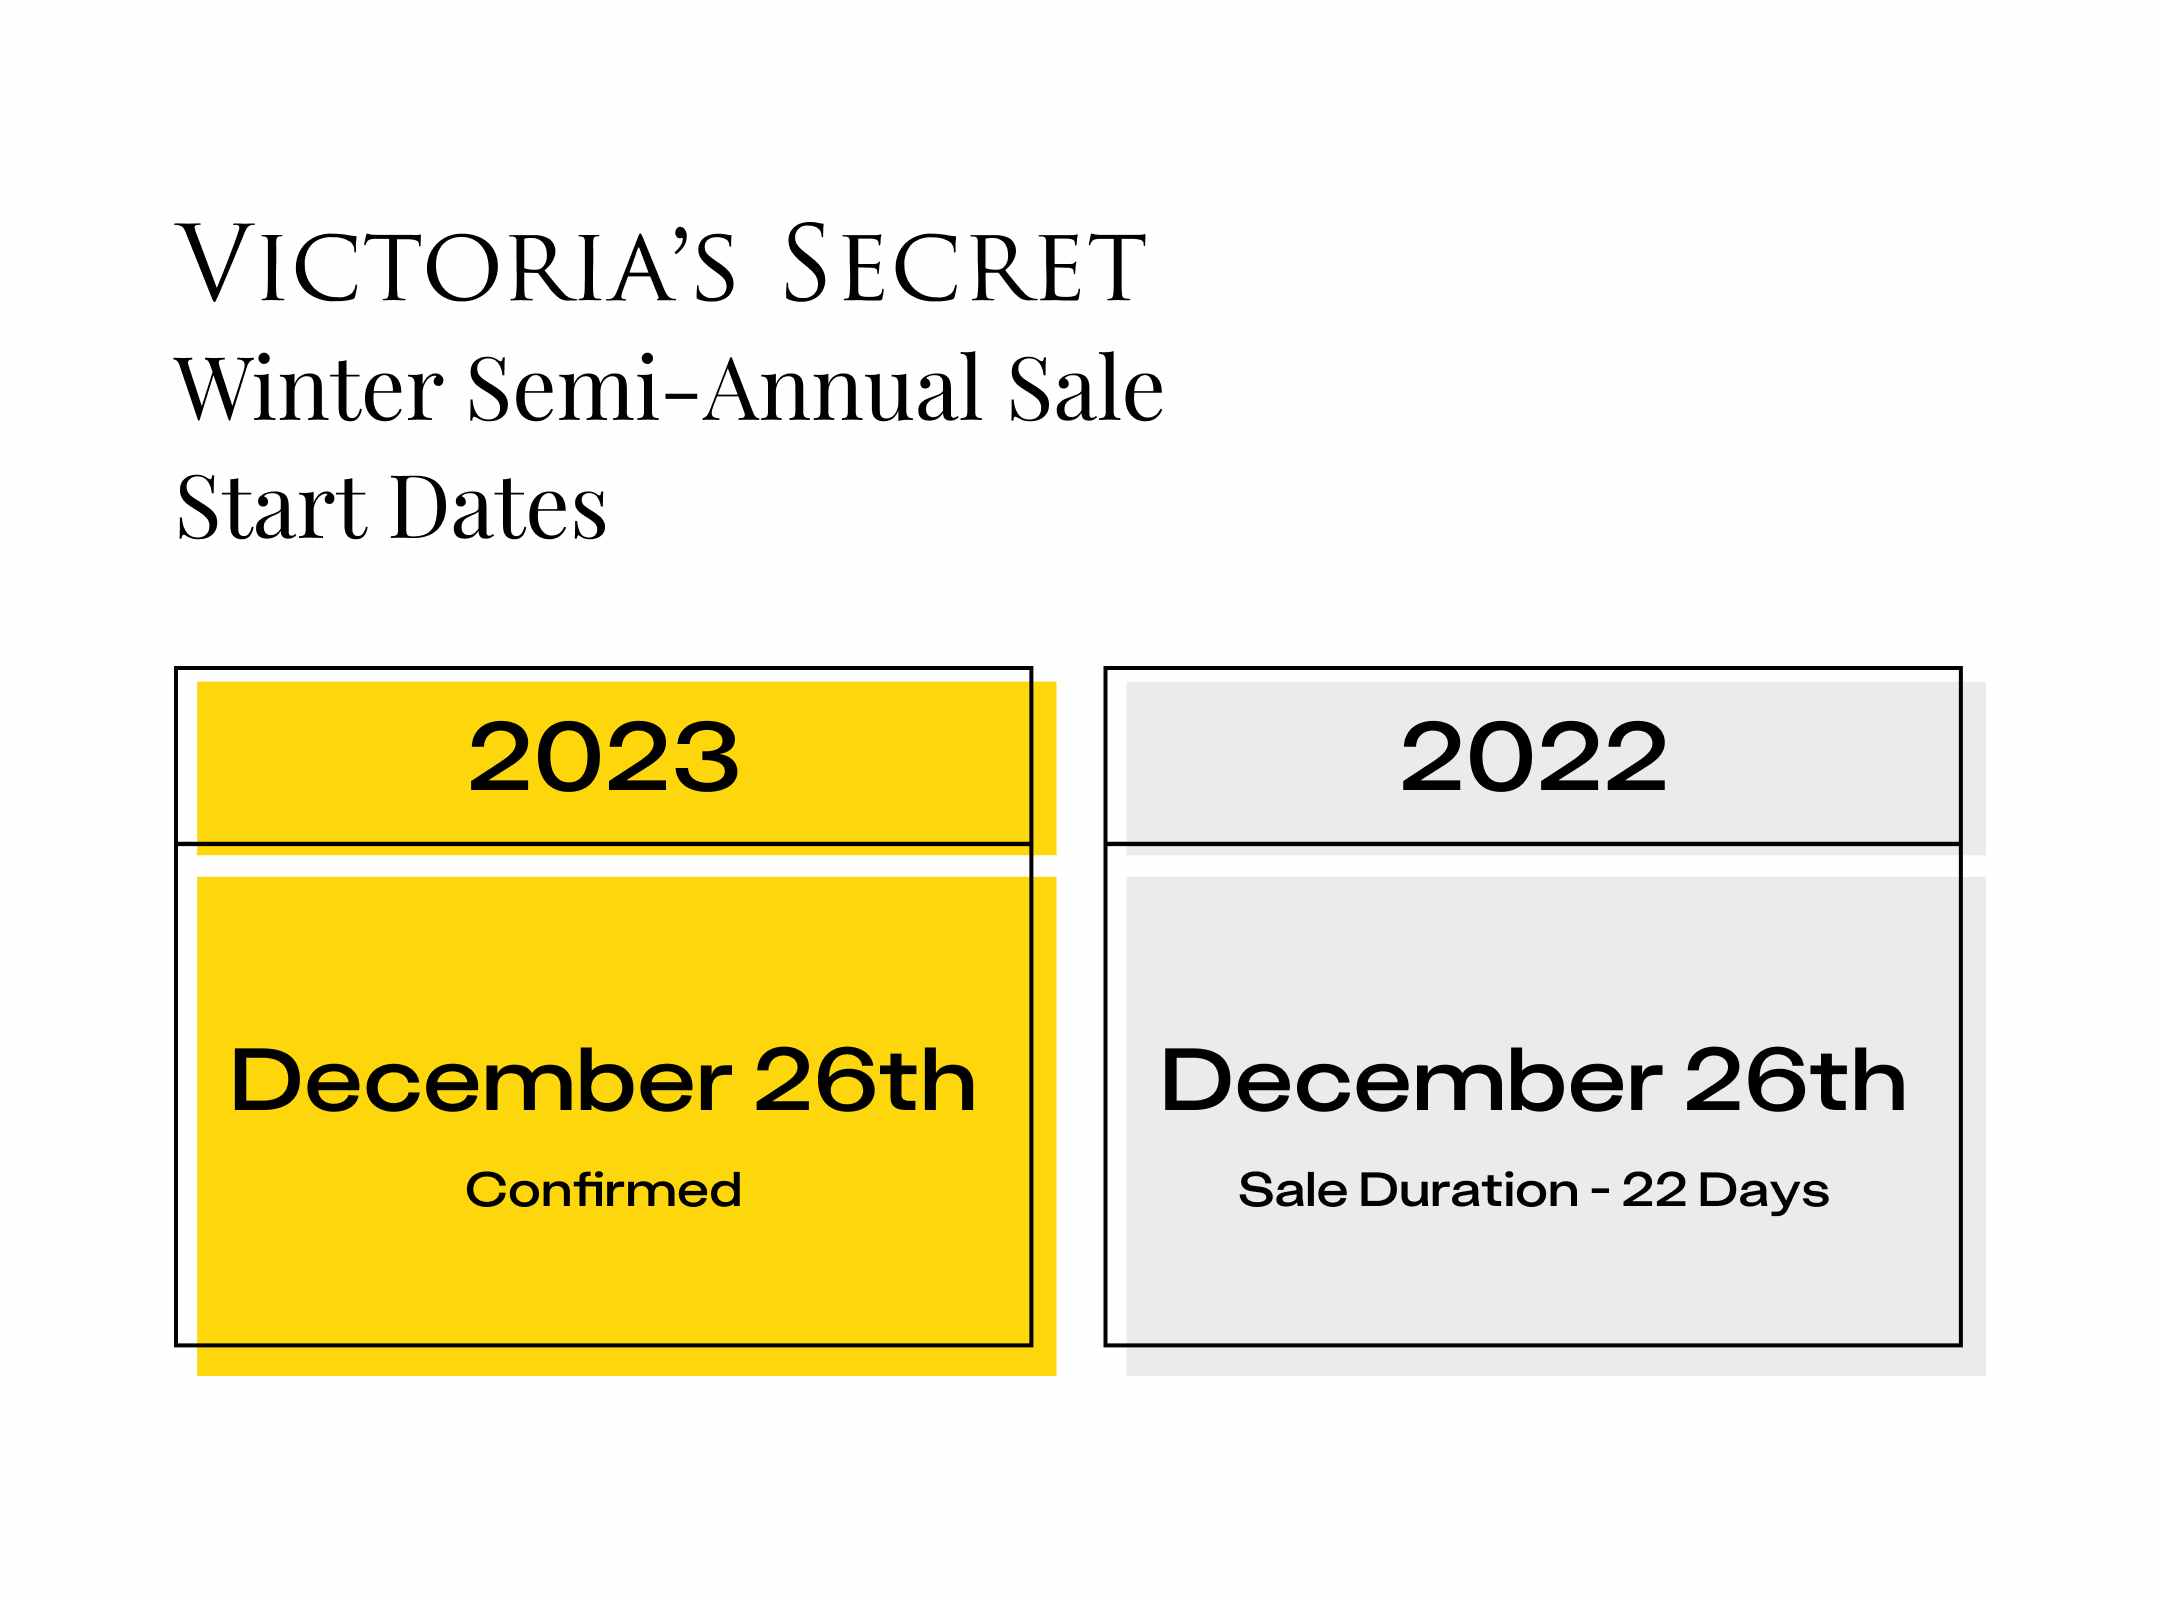 victoria's secret winter semi annual sale dates